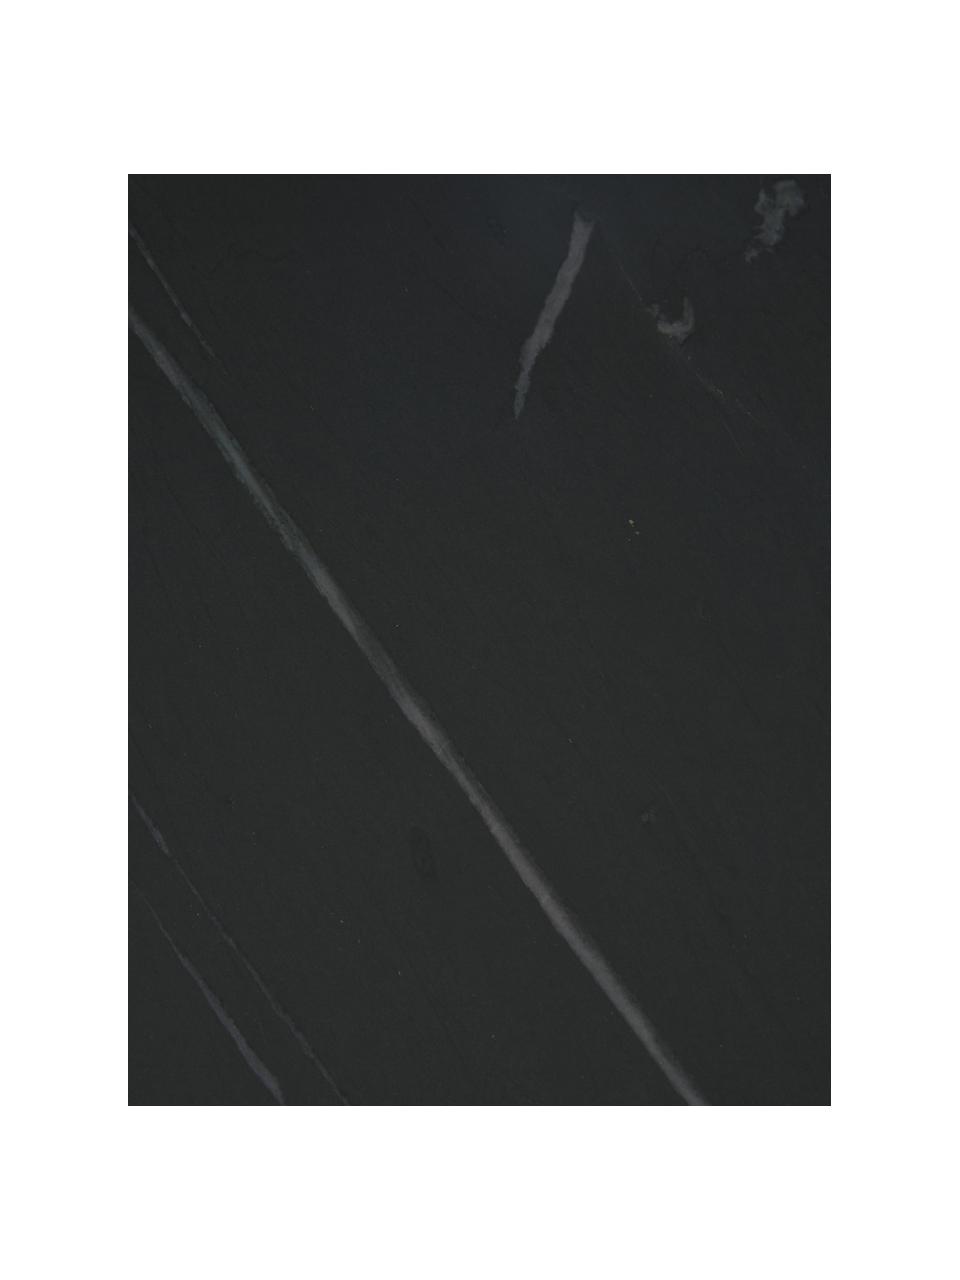 Stolik pomocniczy z marmuru Alys, Blat: marmur, Stelaż: metal malowany proszkowo, Czarny, marmurowy, S 45 x W 50 cm